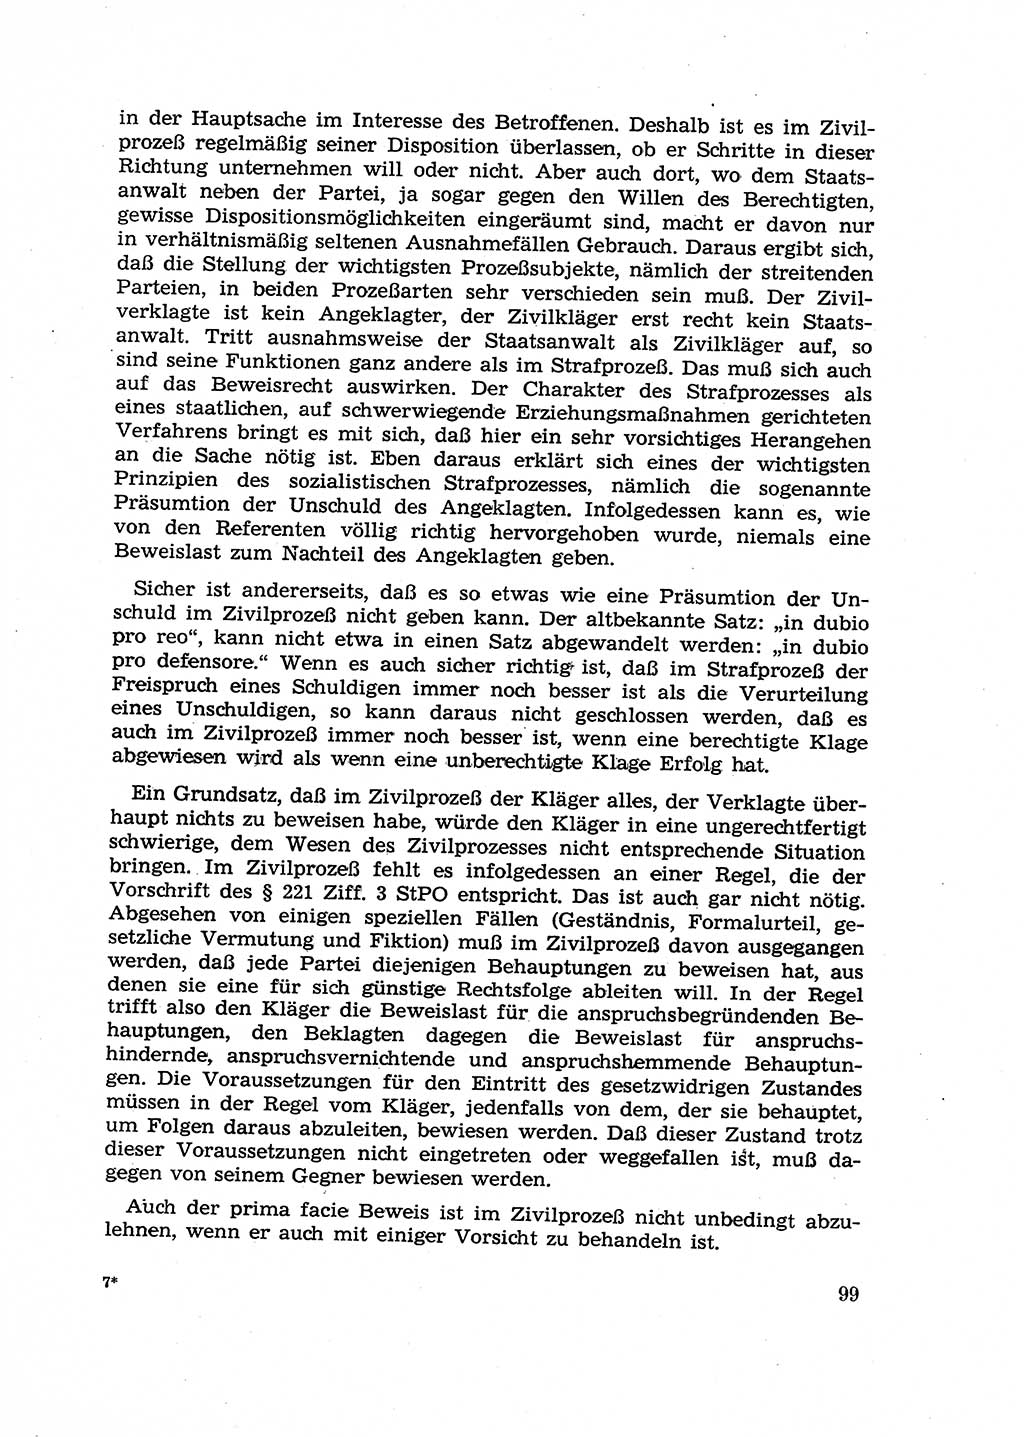 Fragen des Beweisrechts im Strafprozess [Deutsche Demokratische Republik (DDR)] 1956, Seite 99 (Fr. BeweisR. Str.-Proz. DDR 1956, S. 99)